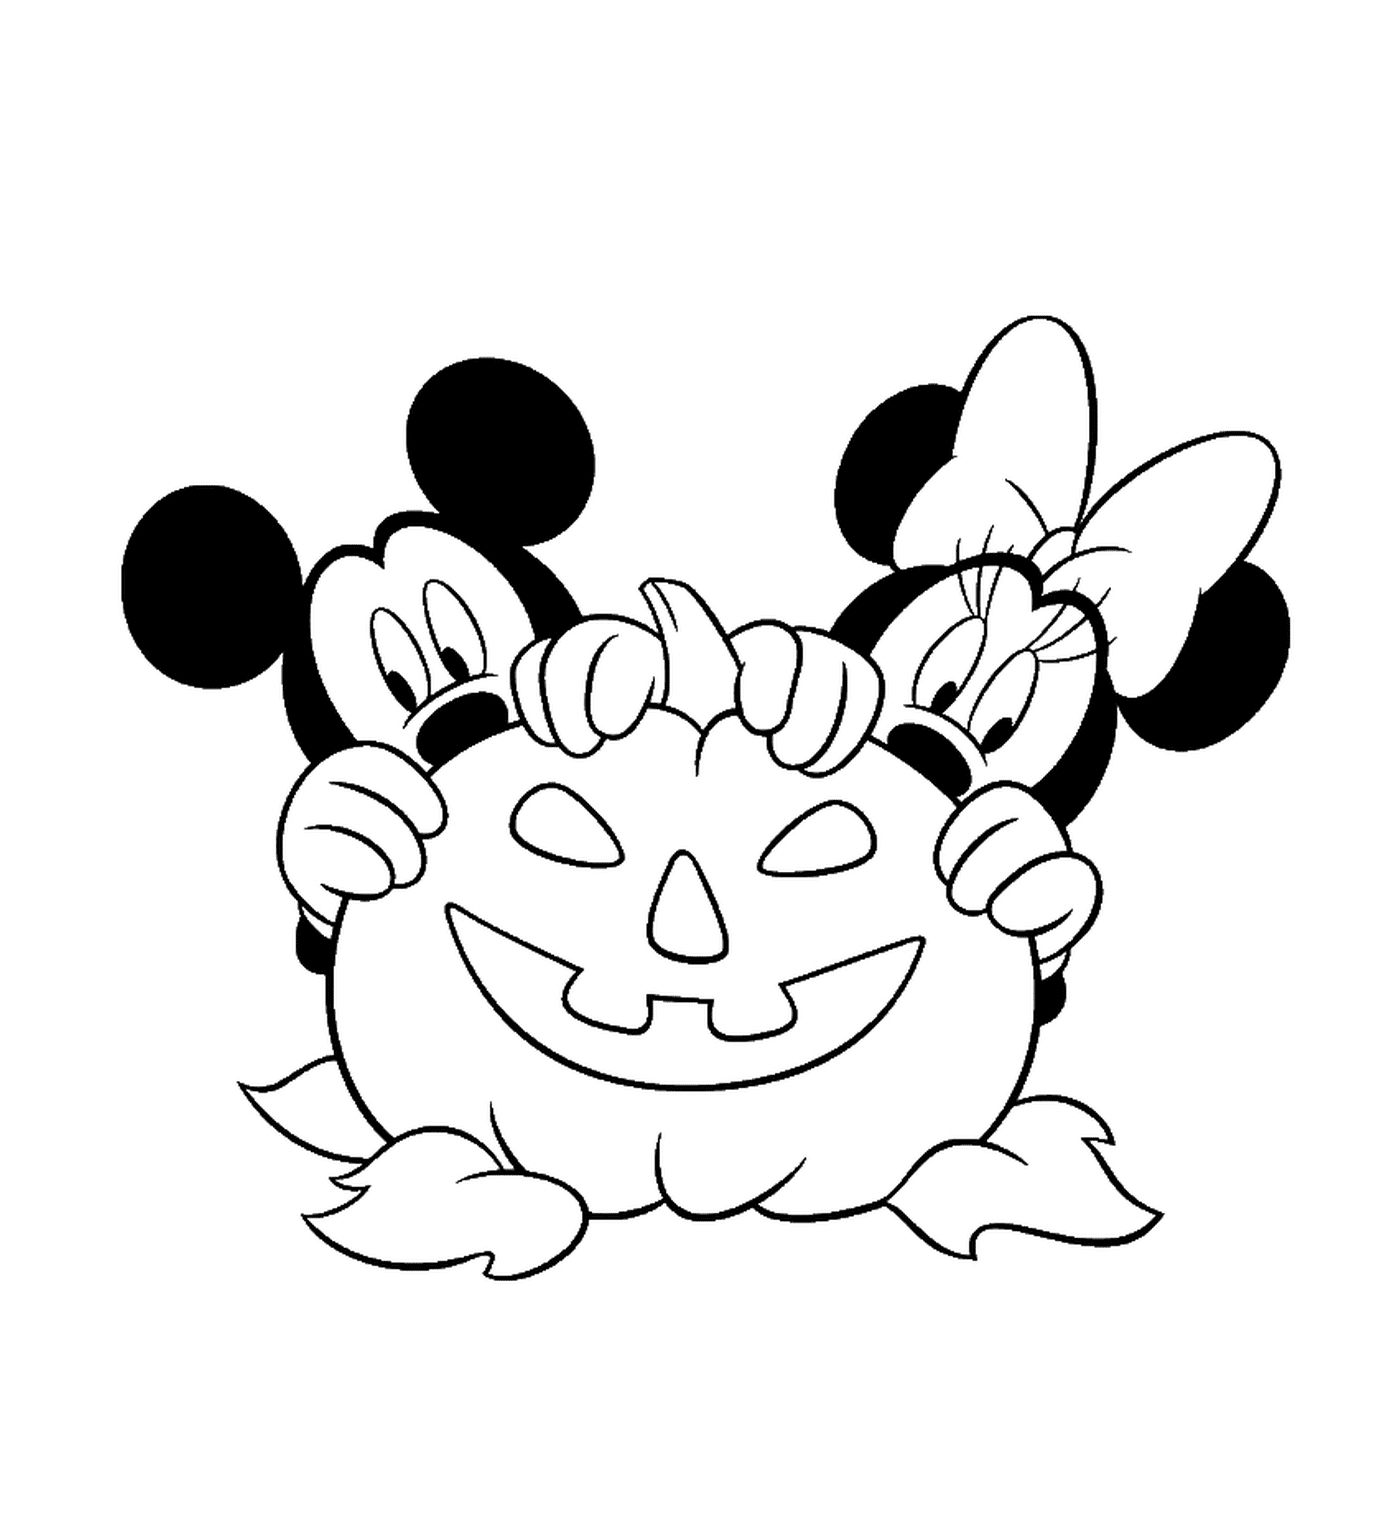  Mickey e Minnie nascosti dietro una zucca 